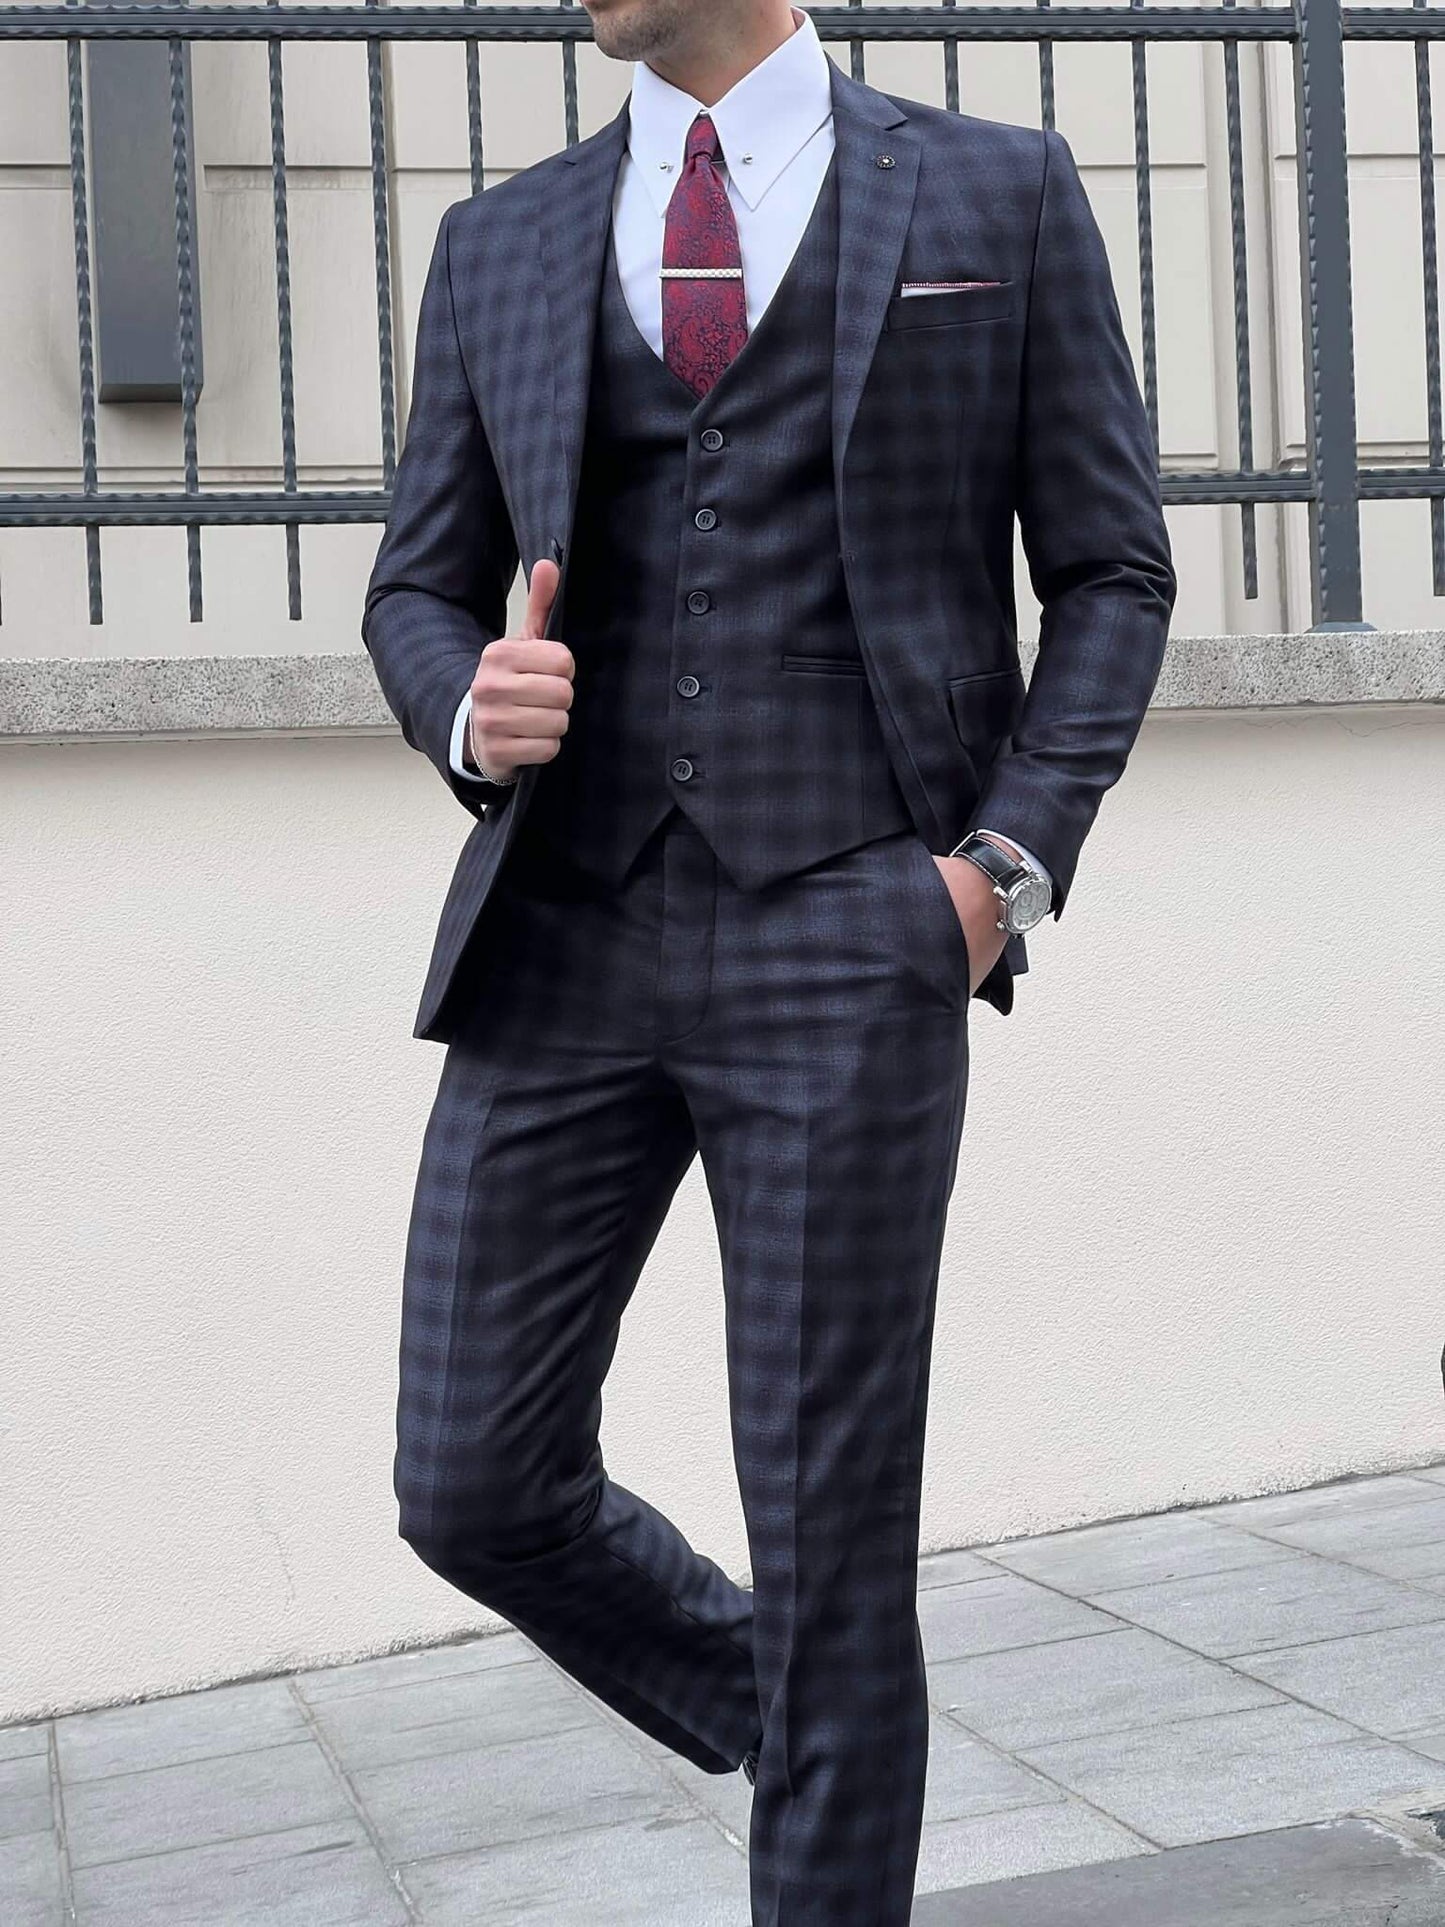 Gemusterter Anzug in Schwarz und Marineblau